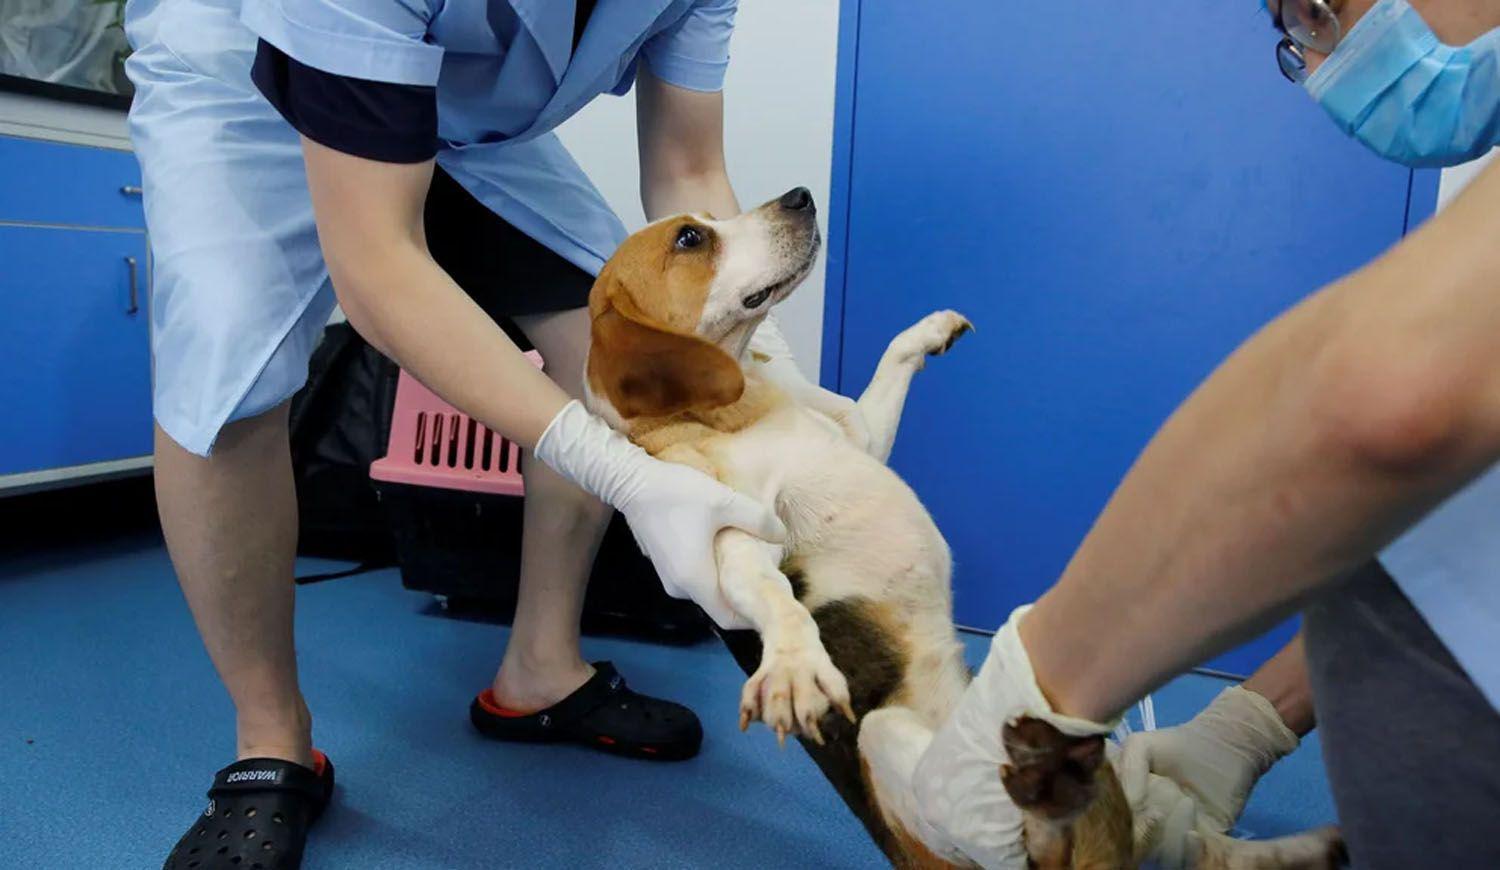 Espantildea- denuncian que maacutes de 30 cachorros beagle seraacuten sacrificados en un experimento cientiacutefico